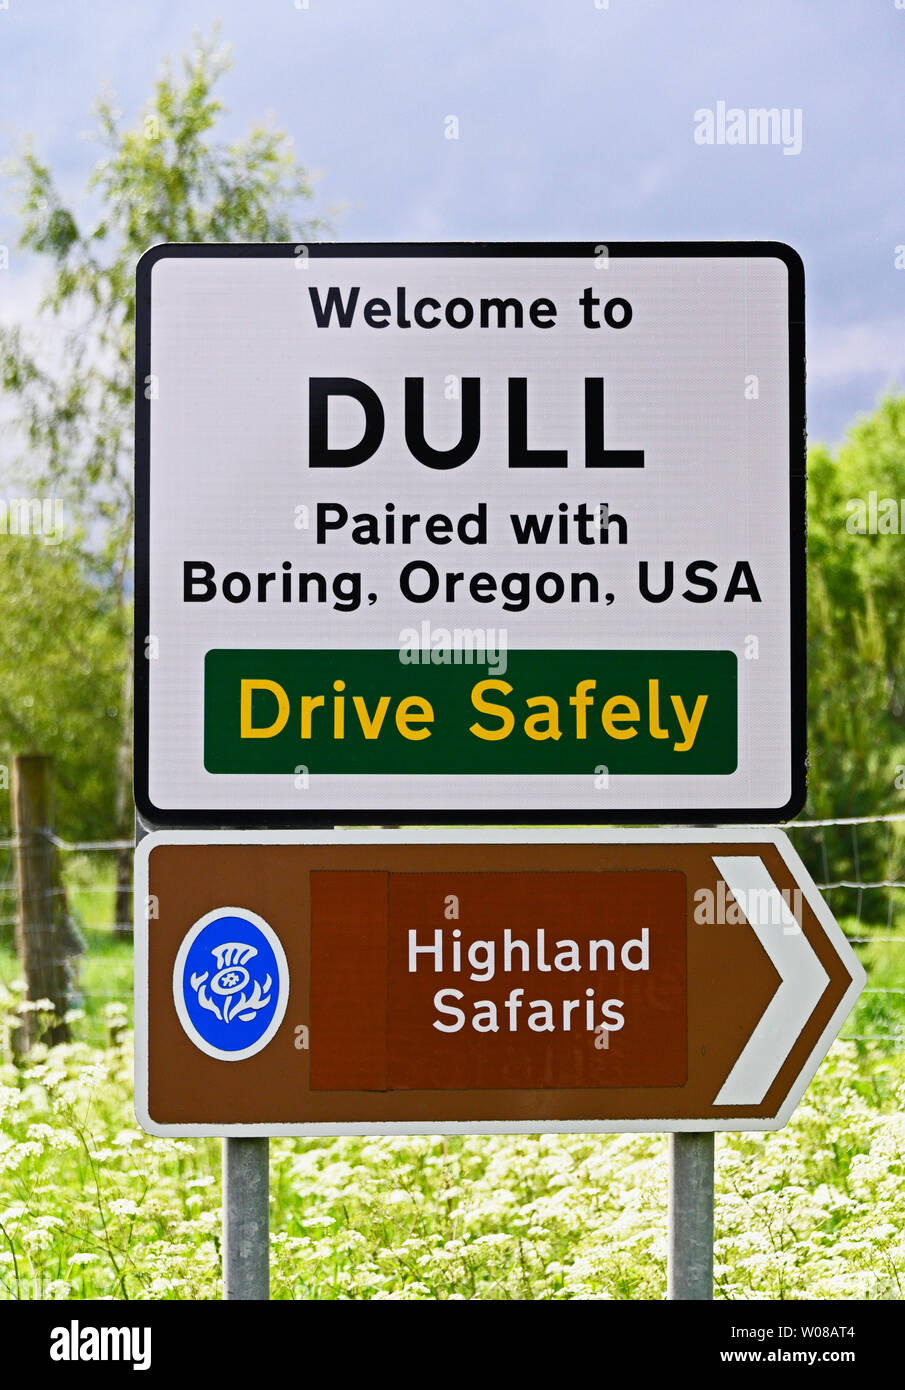 Panneau du village. 'DULL Couplé avec plate, Oregon, USA. En voiture en toute sécurité. Highland Safaris. Mat, Perth et Kinross, Ecosse, Royaume-Uni, Europe. Banque D'Images